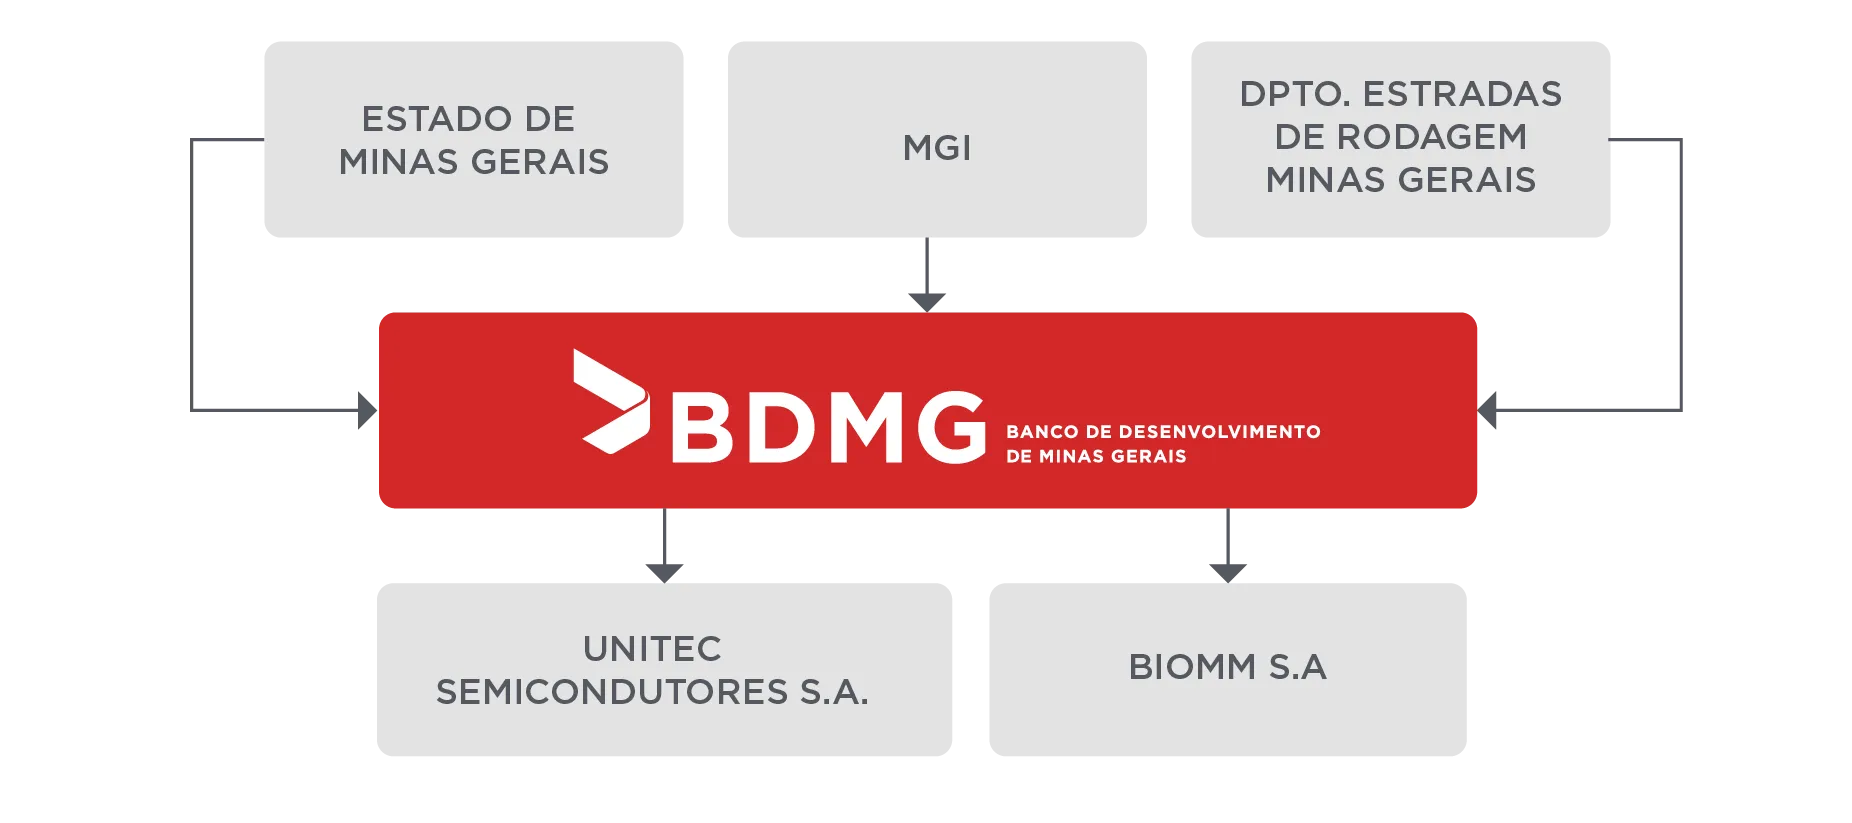 BDMG Estrutura Acionária